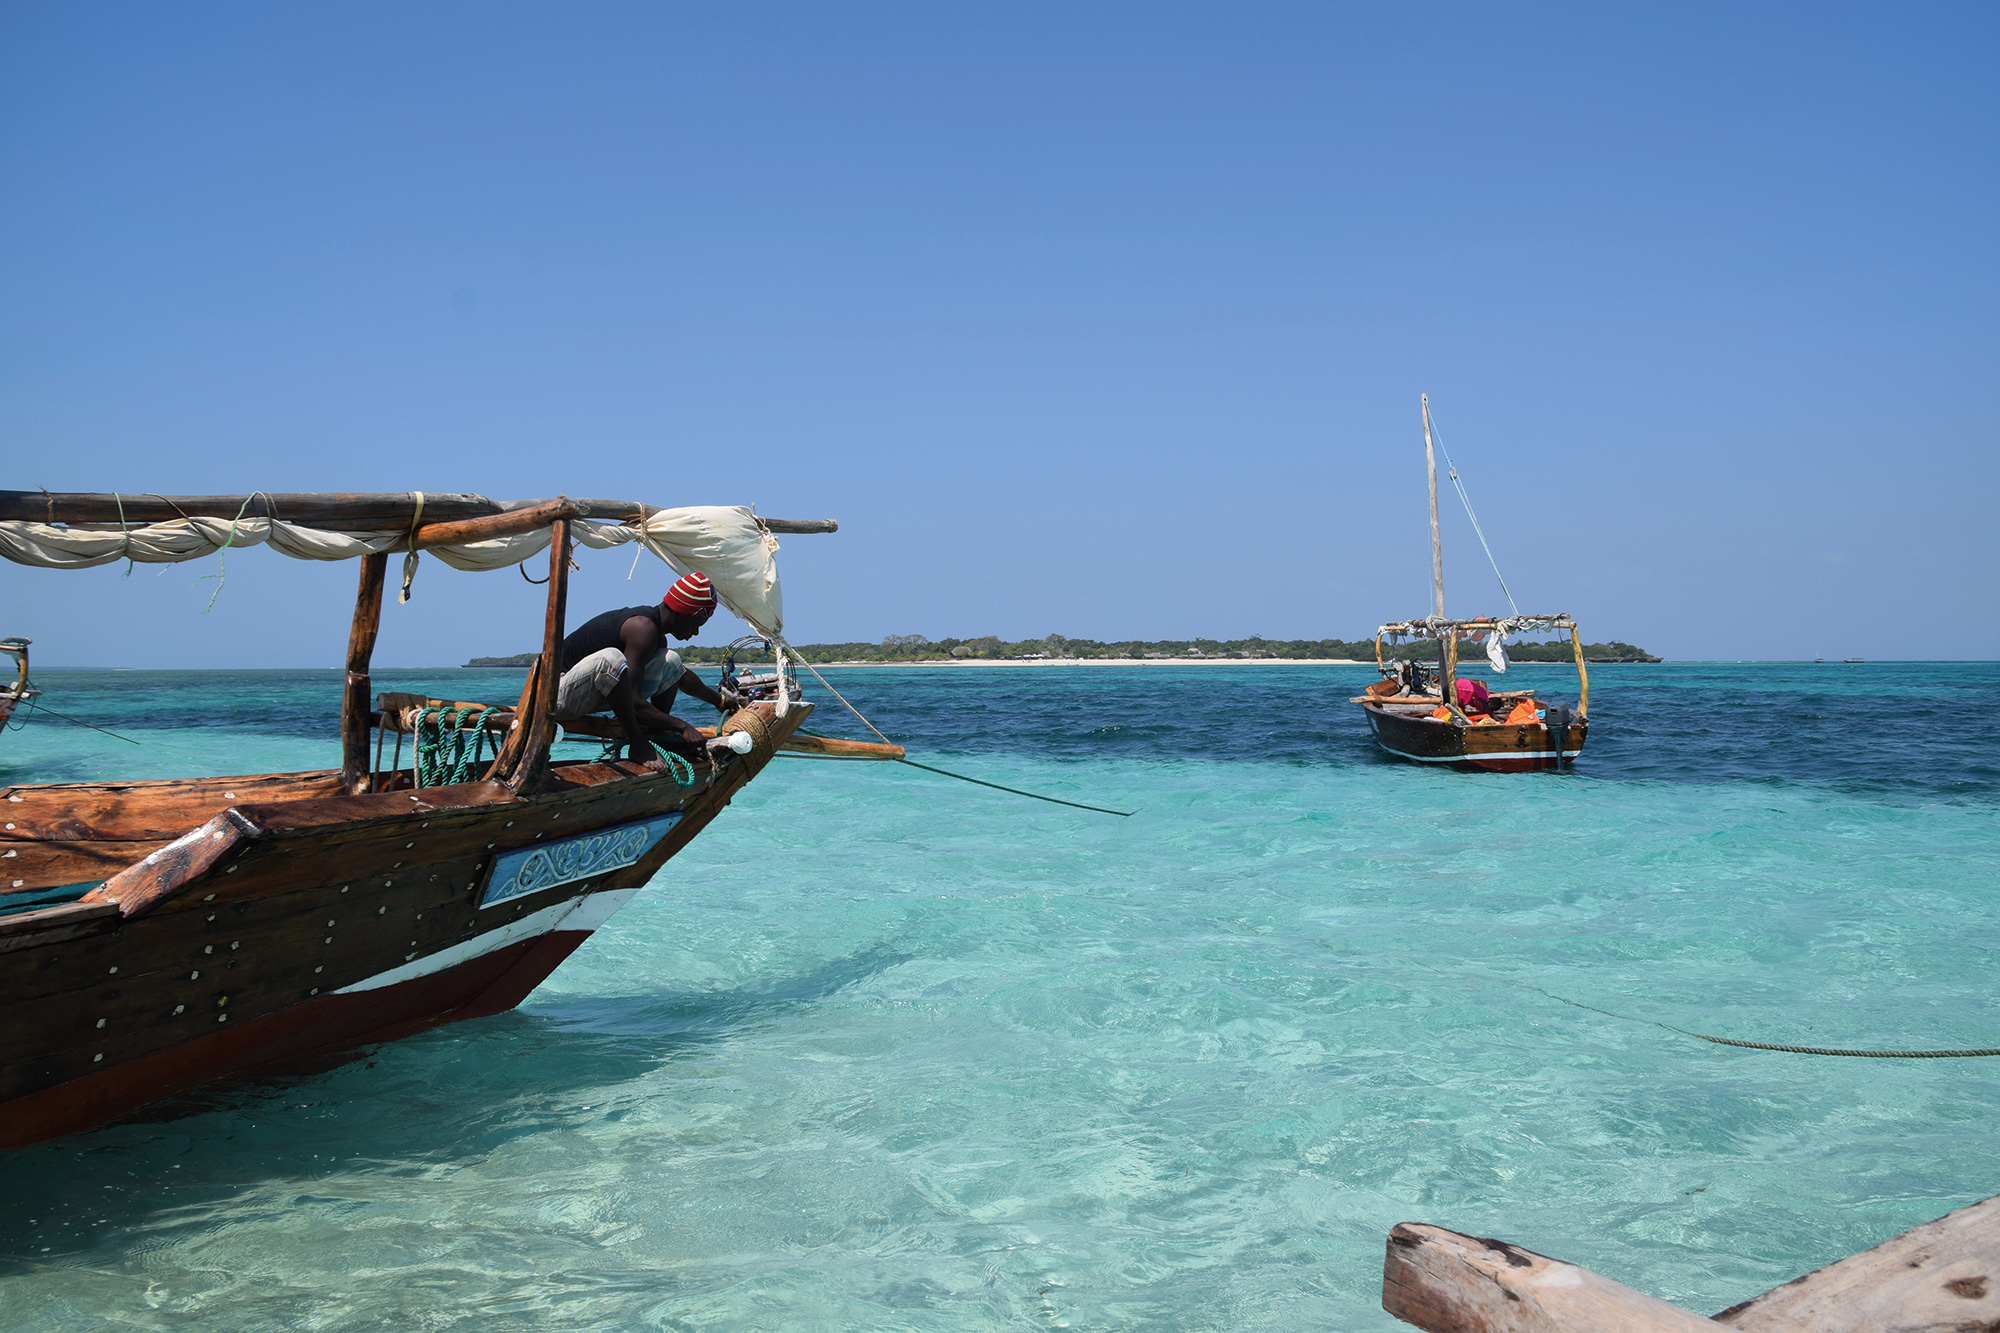 Efter Uldum Højskoles tur til Kenya er slut, rejser eleverne ofte videre og Zanzibar er et populært rejsemål.